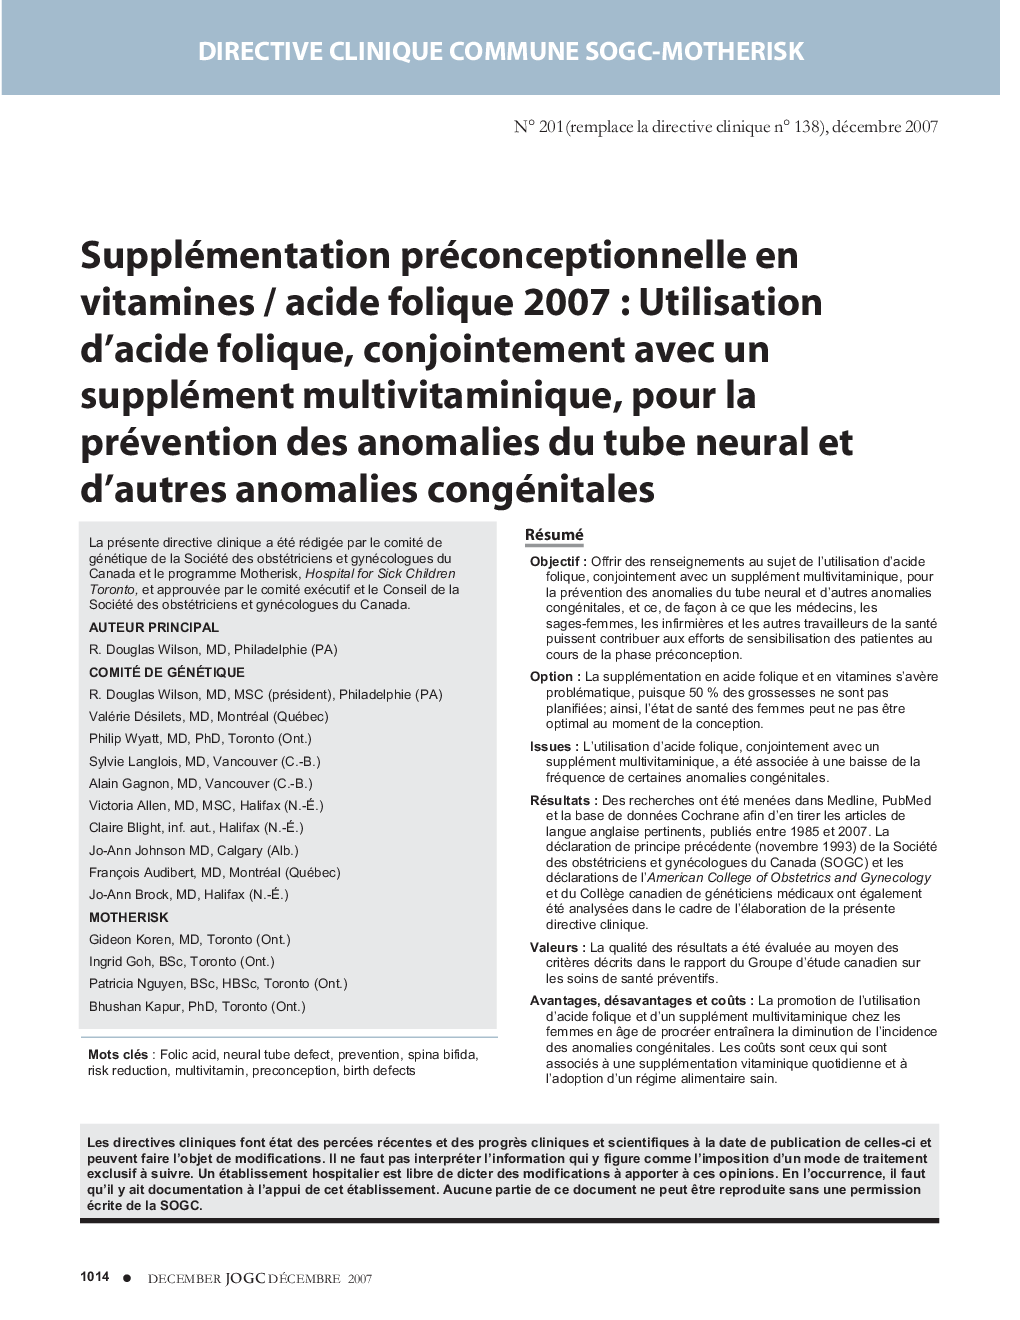 Supplémentation préconceptionnelle en vitamines / acide folique 2007 : Utilisation d'acide folique, conjointement avec un supplément multivitaminique, pour la prévention des anomalies du tube neural et d'autres anomalies congénitales